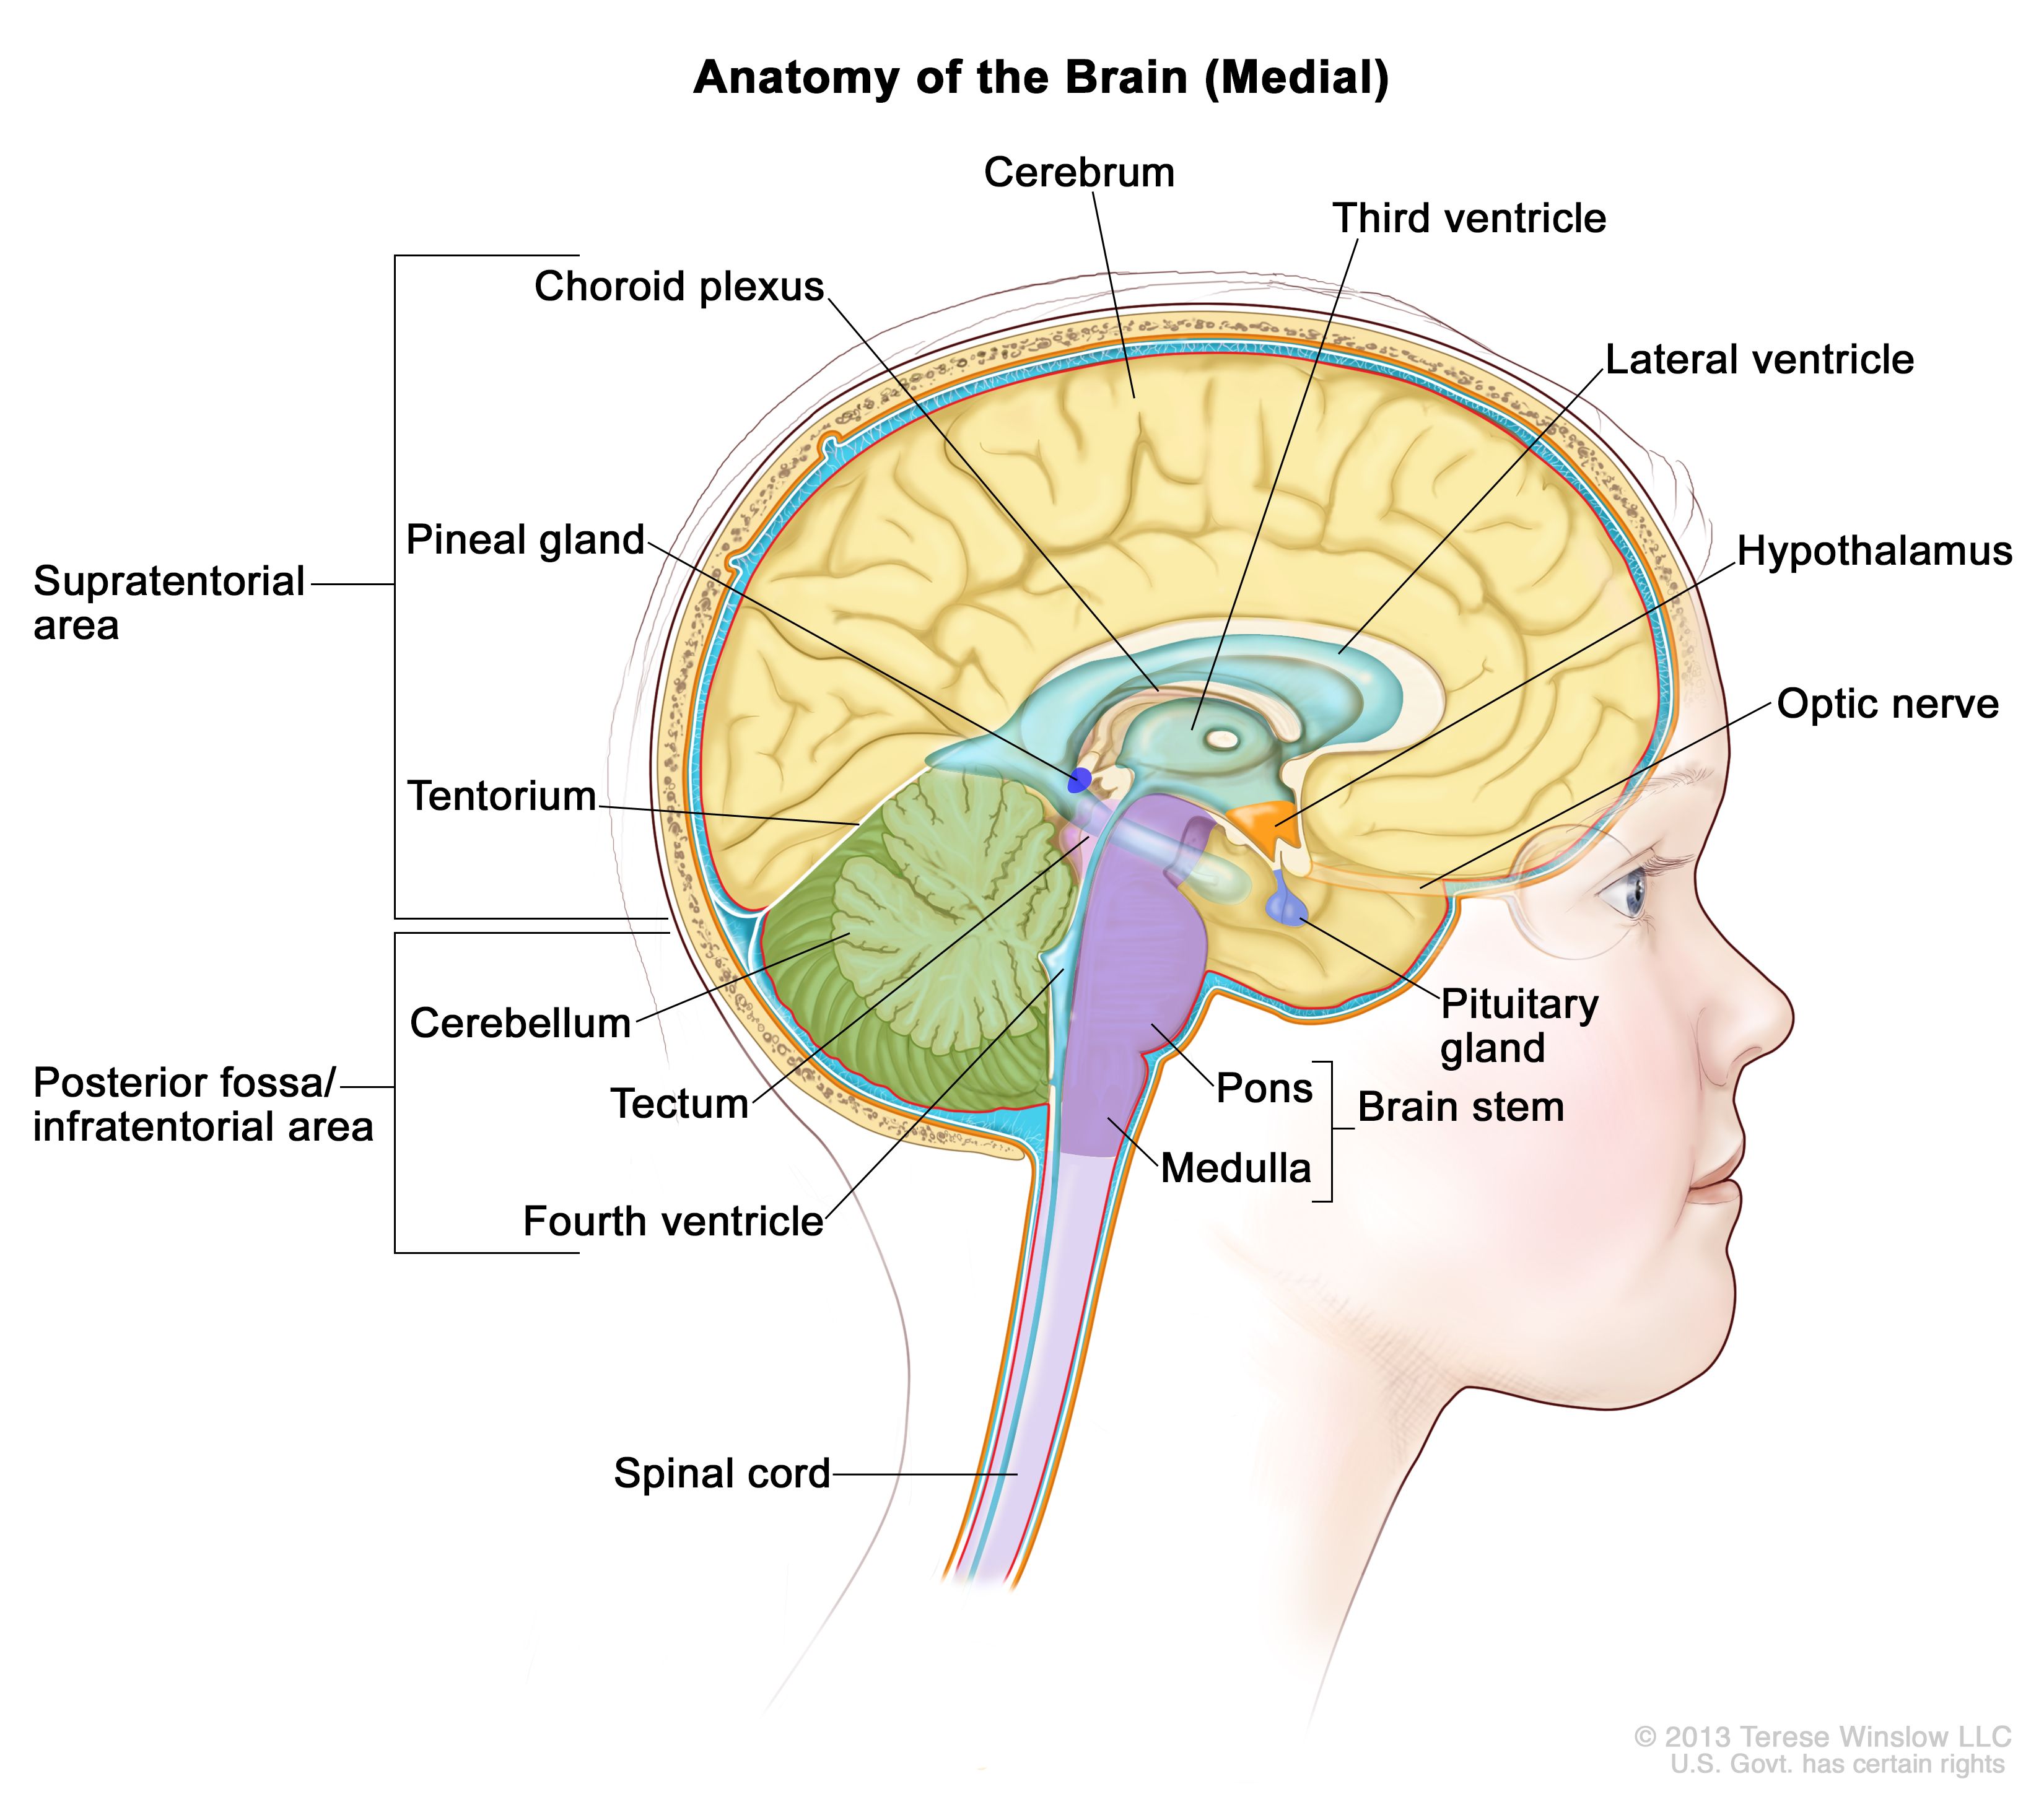 脳の解剖図：テント上（脳の上部）および後頭蓋窩/テント下（脳の後方下部）を示す。テント上の領域には、大脳、側脳室、第三脳室、脈絡叢、視床下部、松果体、下垂体、視神が含まれている。後頭蓋窩/テント下の領域には、小脳、視蓋、第四脳室、脳幹（脳橋、延髄）が含まれている。テント、脊髄も示されている。